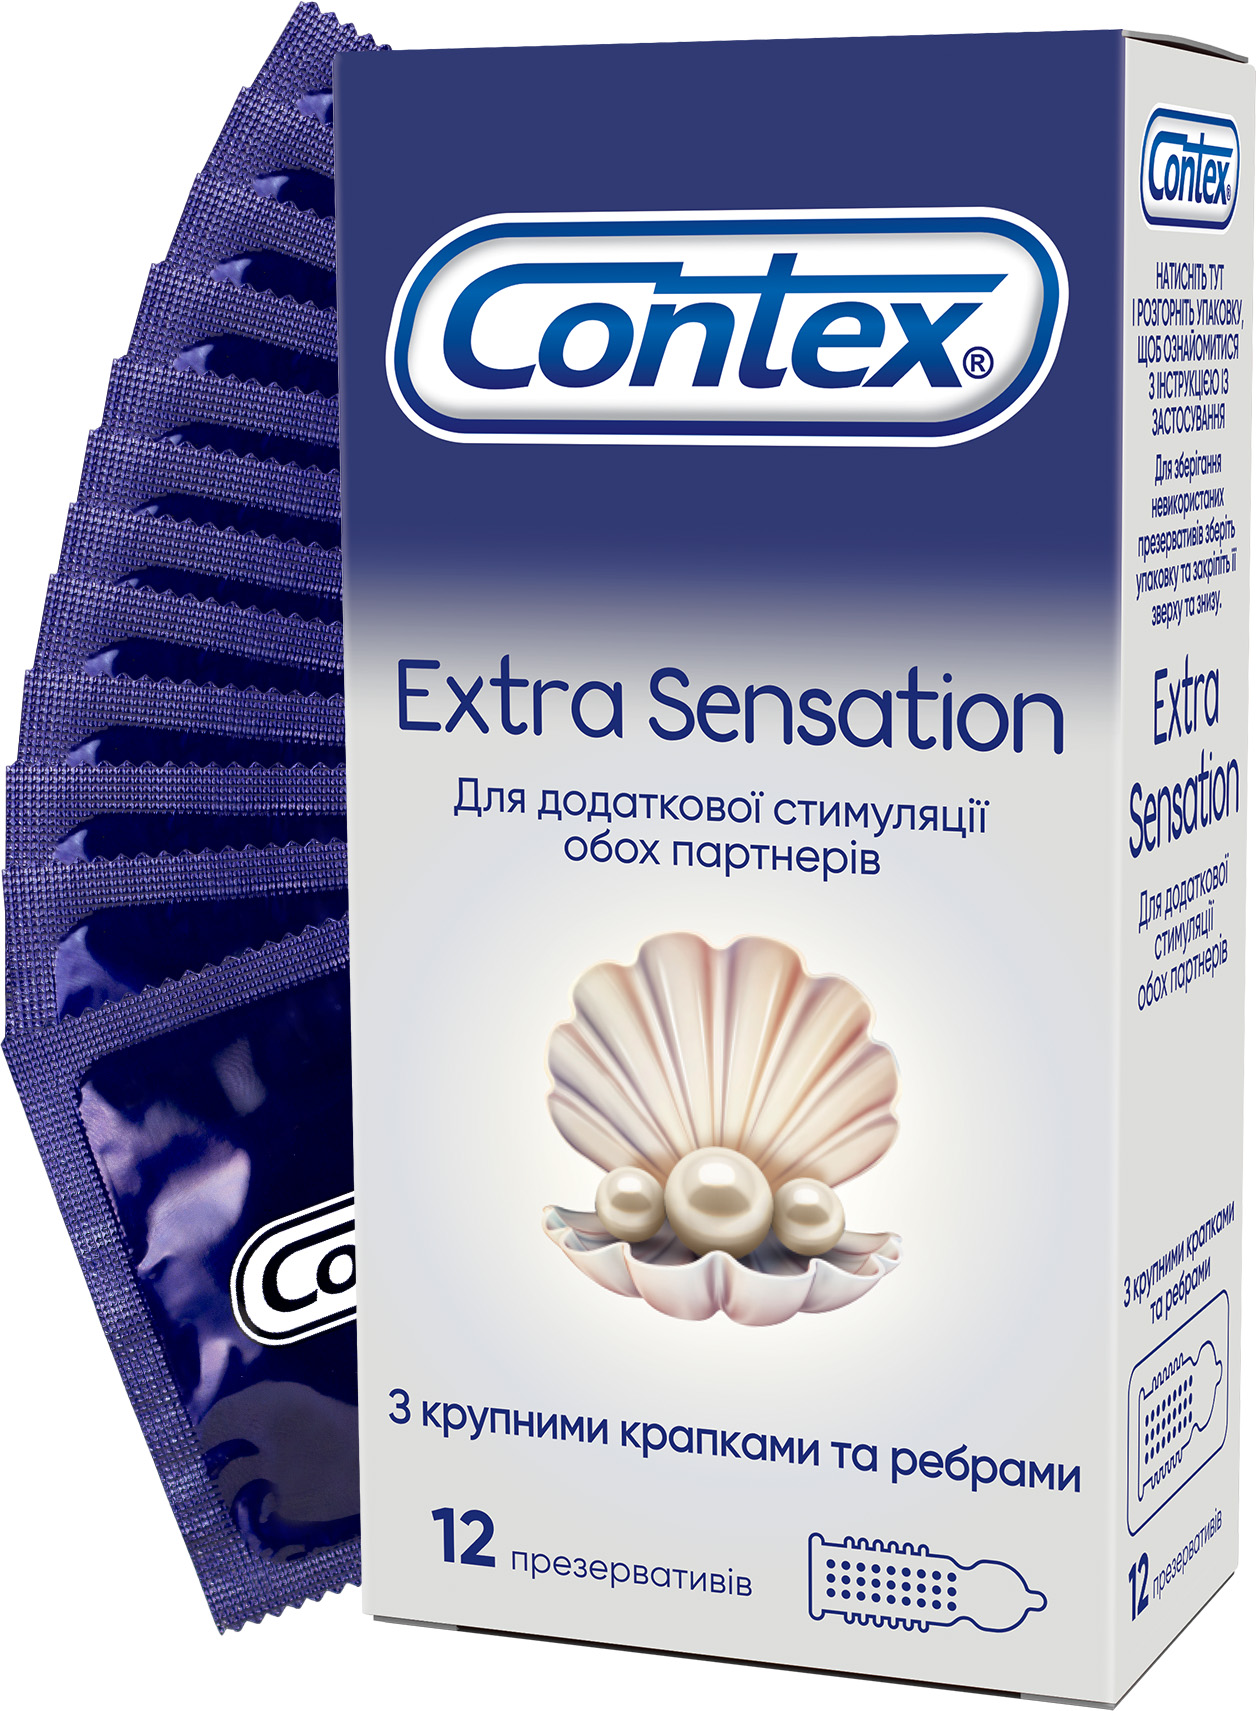 Презервативы Contex купить в Киеве: цены на презервативы Контекс, отзывы -  ROZETKA